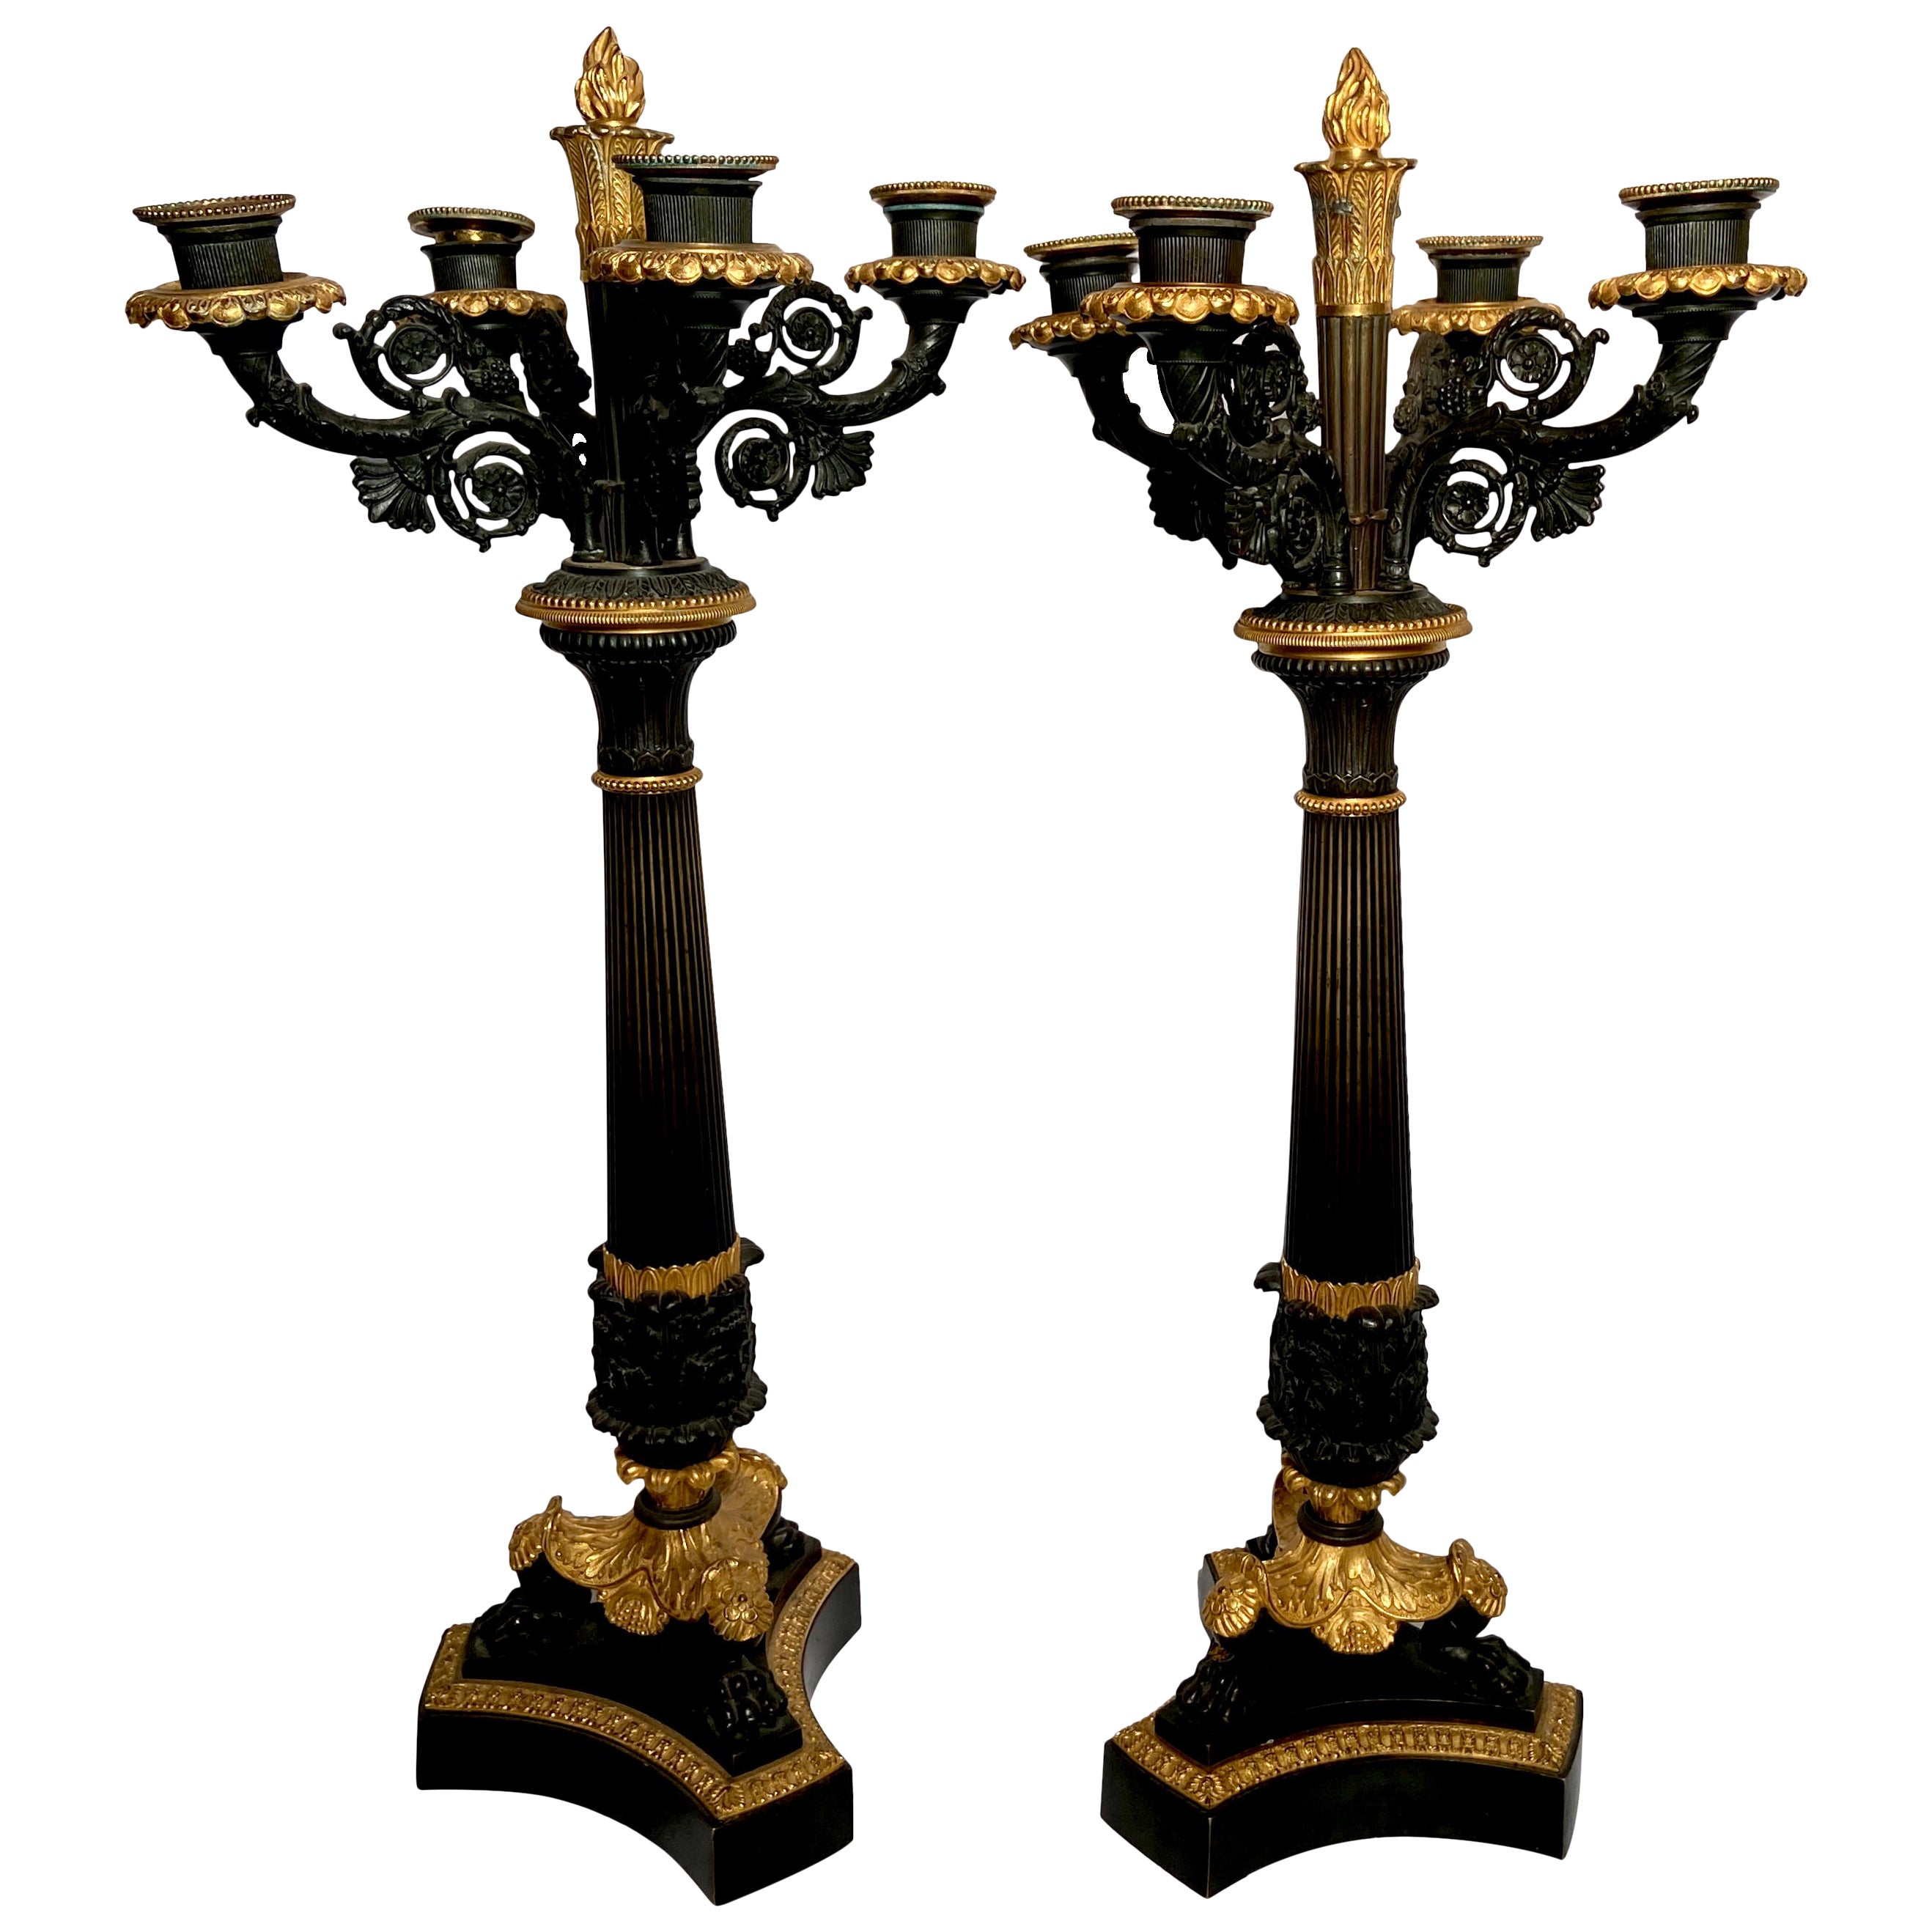 Paire de candélabres anciens de style Empire français en bronze patiné et bronze doré, vers 1860